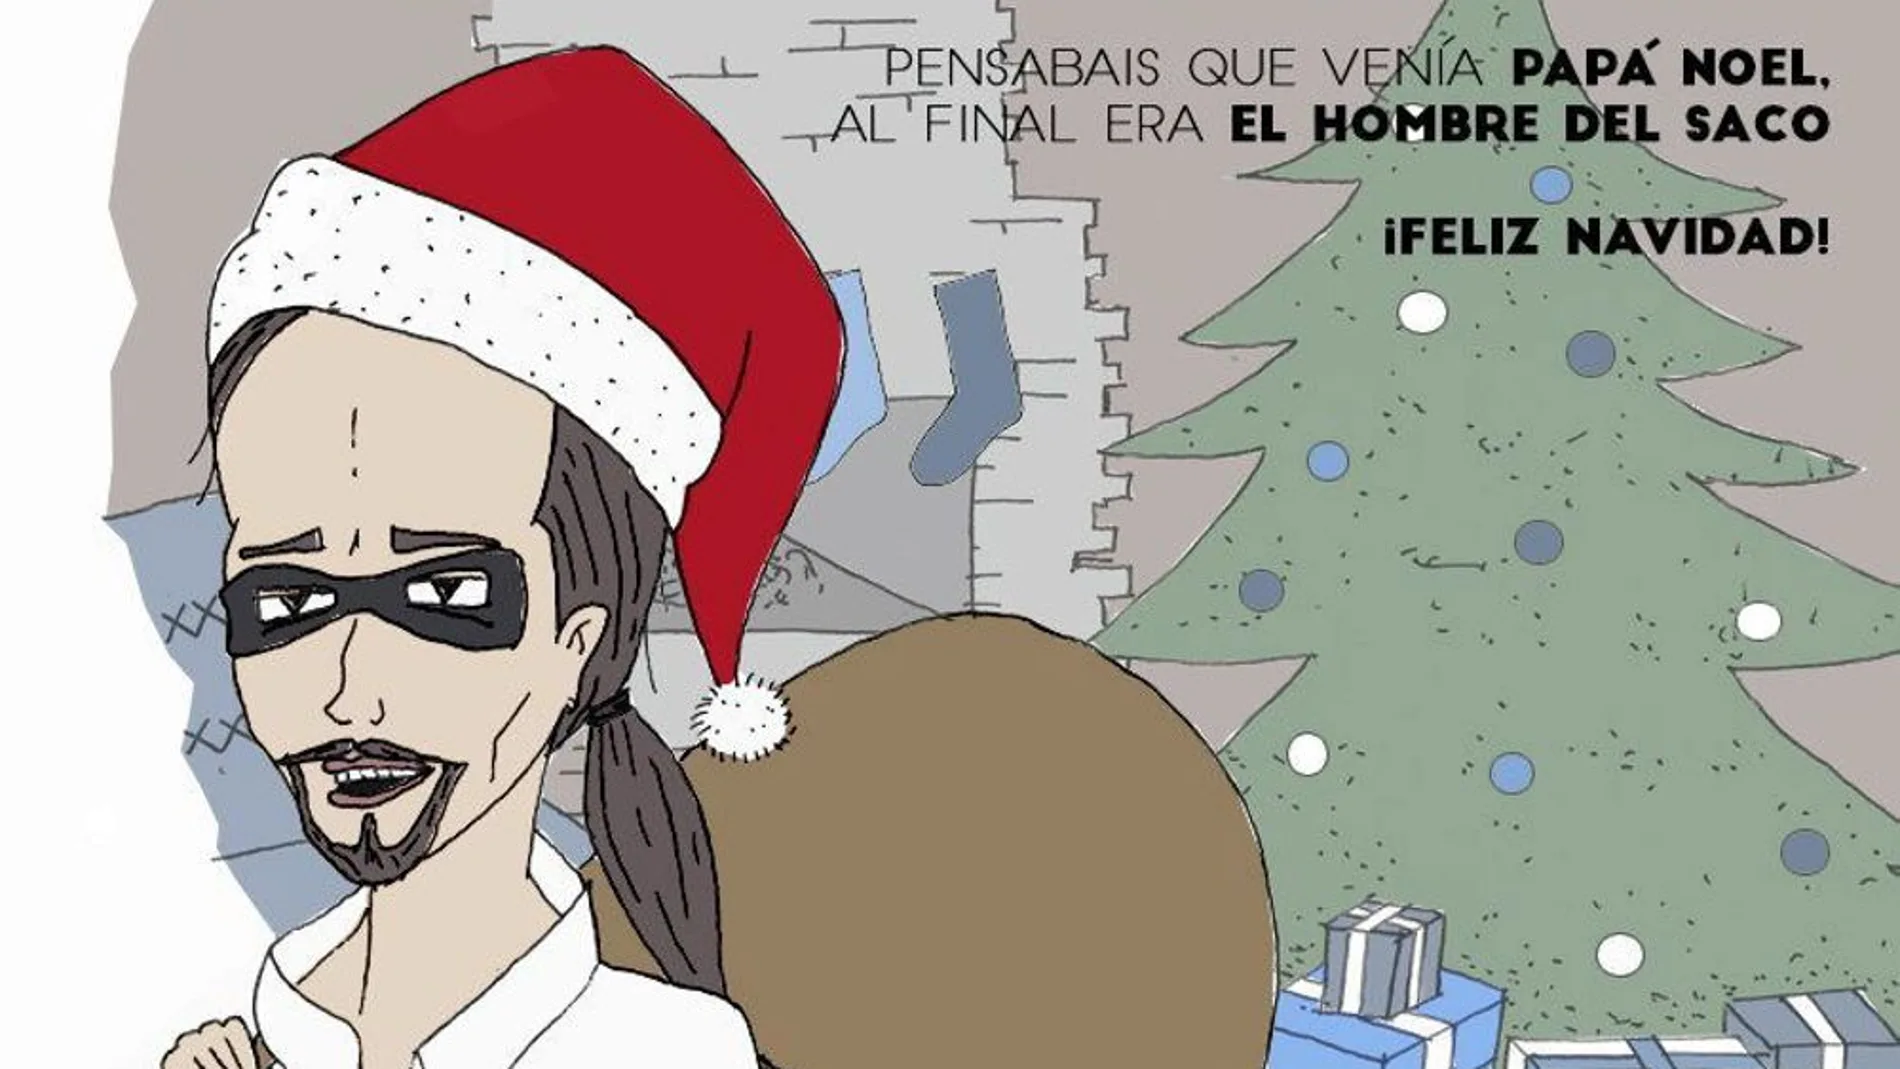 Pablo Iglesias, ¿Papá Noel o el hombre del saco?